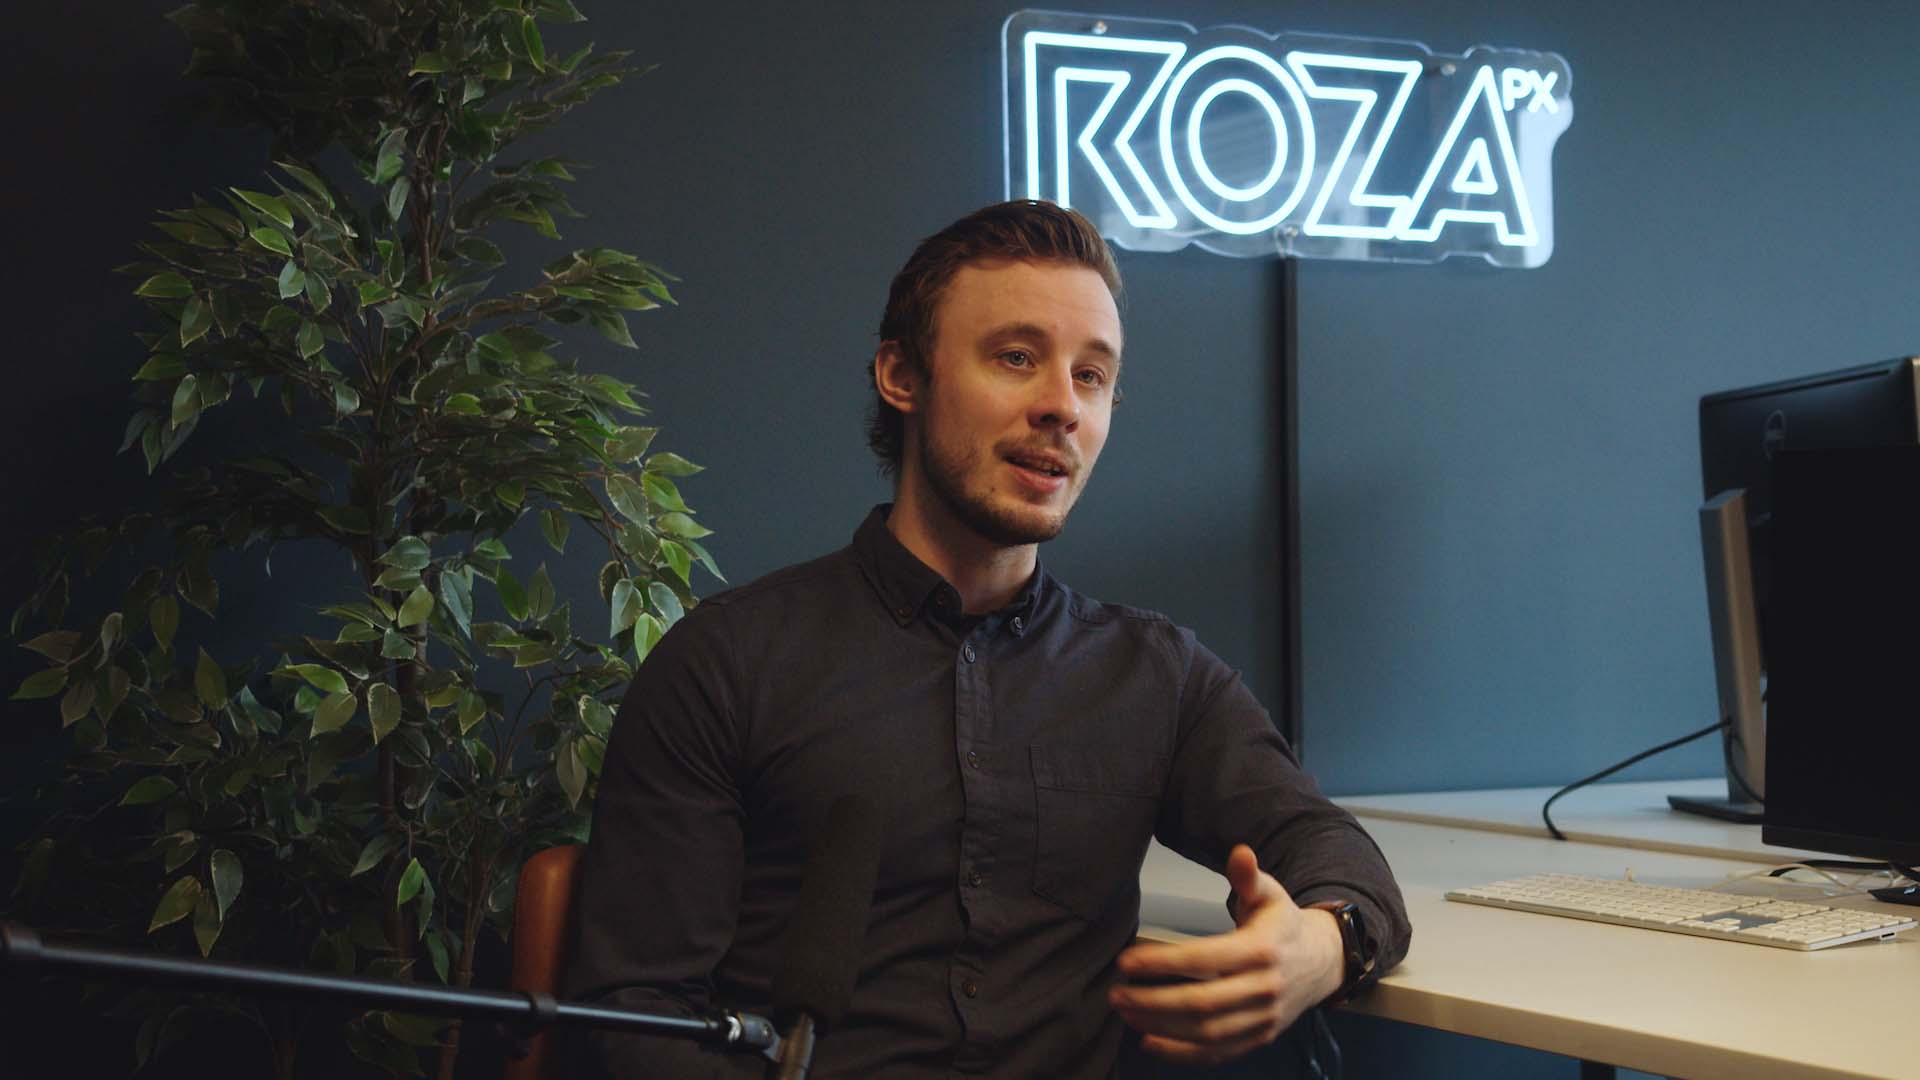 En ung mann sitter i et kontor eller podcast-studio og prater. Blå vegg bak han, Roza logo på veggen. Brukt i forbindelse med bloggpost hos Roza om å bli komfortabel foran kamera.